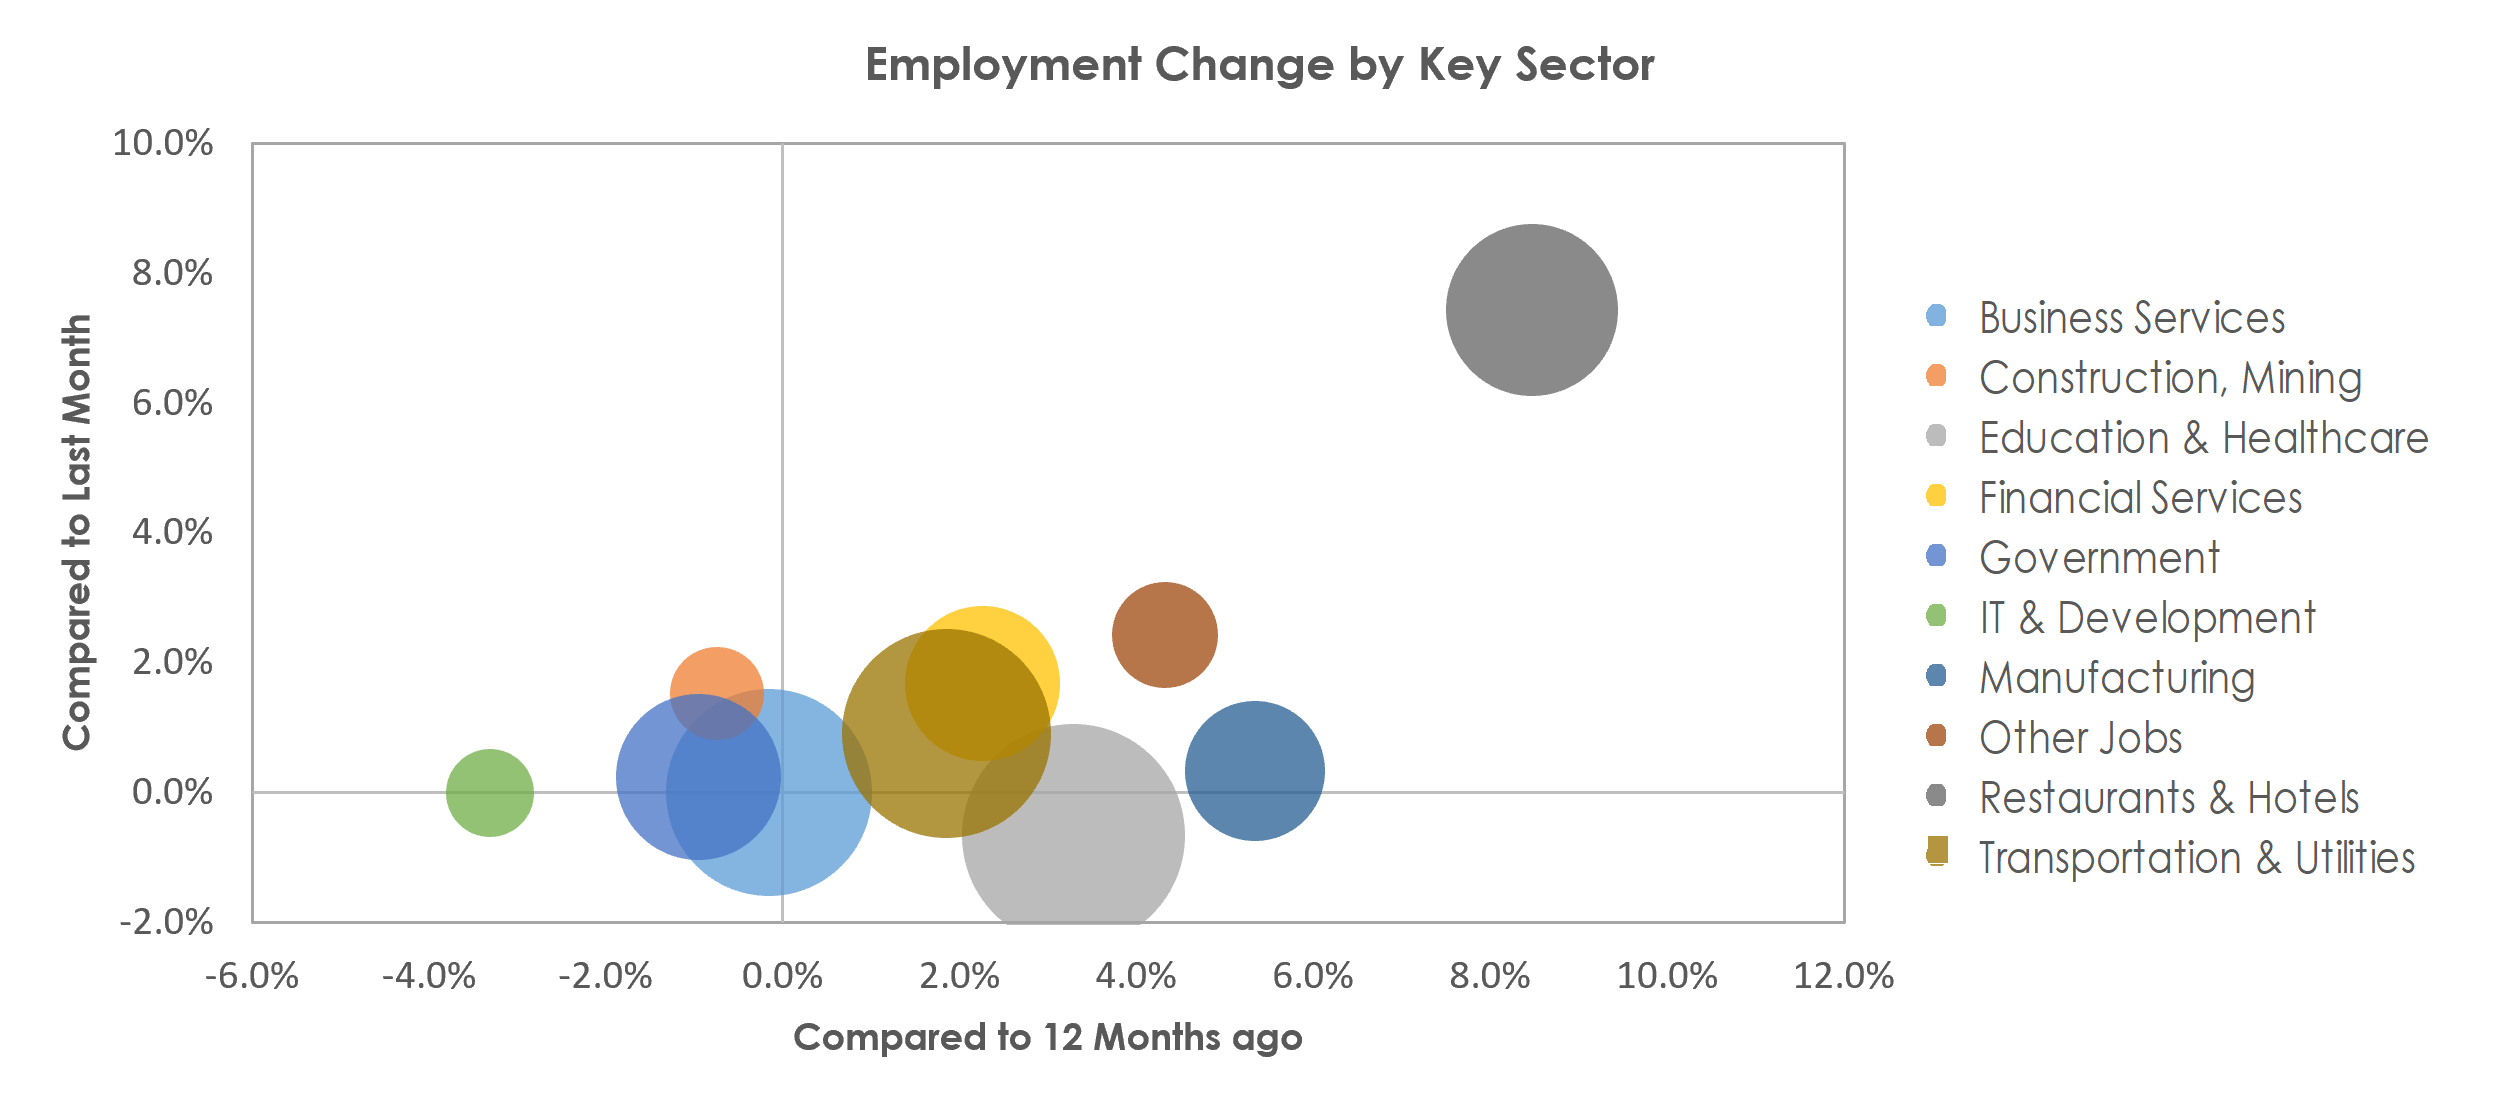 Bridgeport-Stamford-Norwalk, CT Unemployment by Industry June 2022